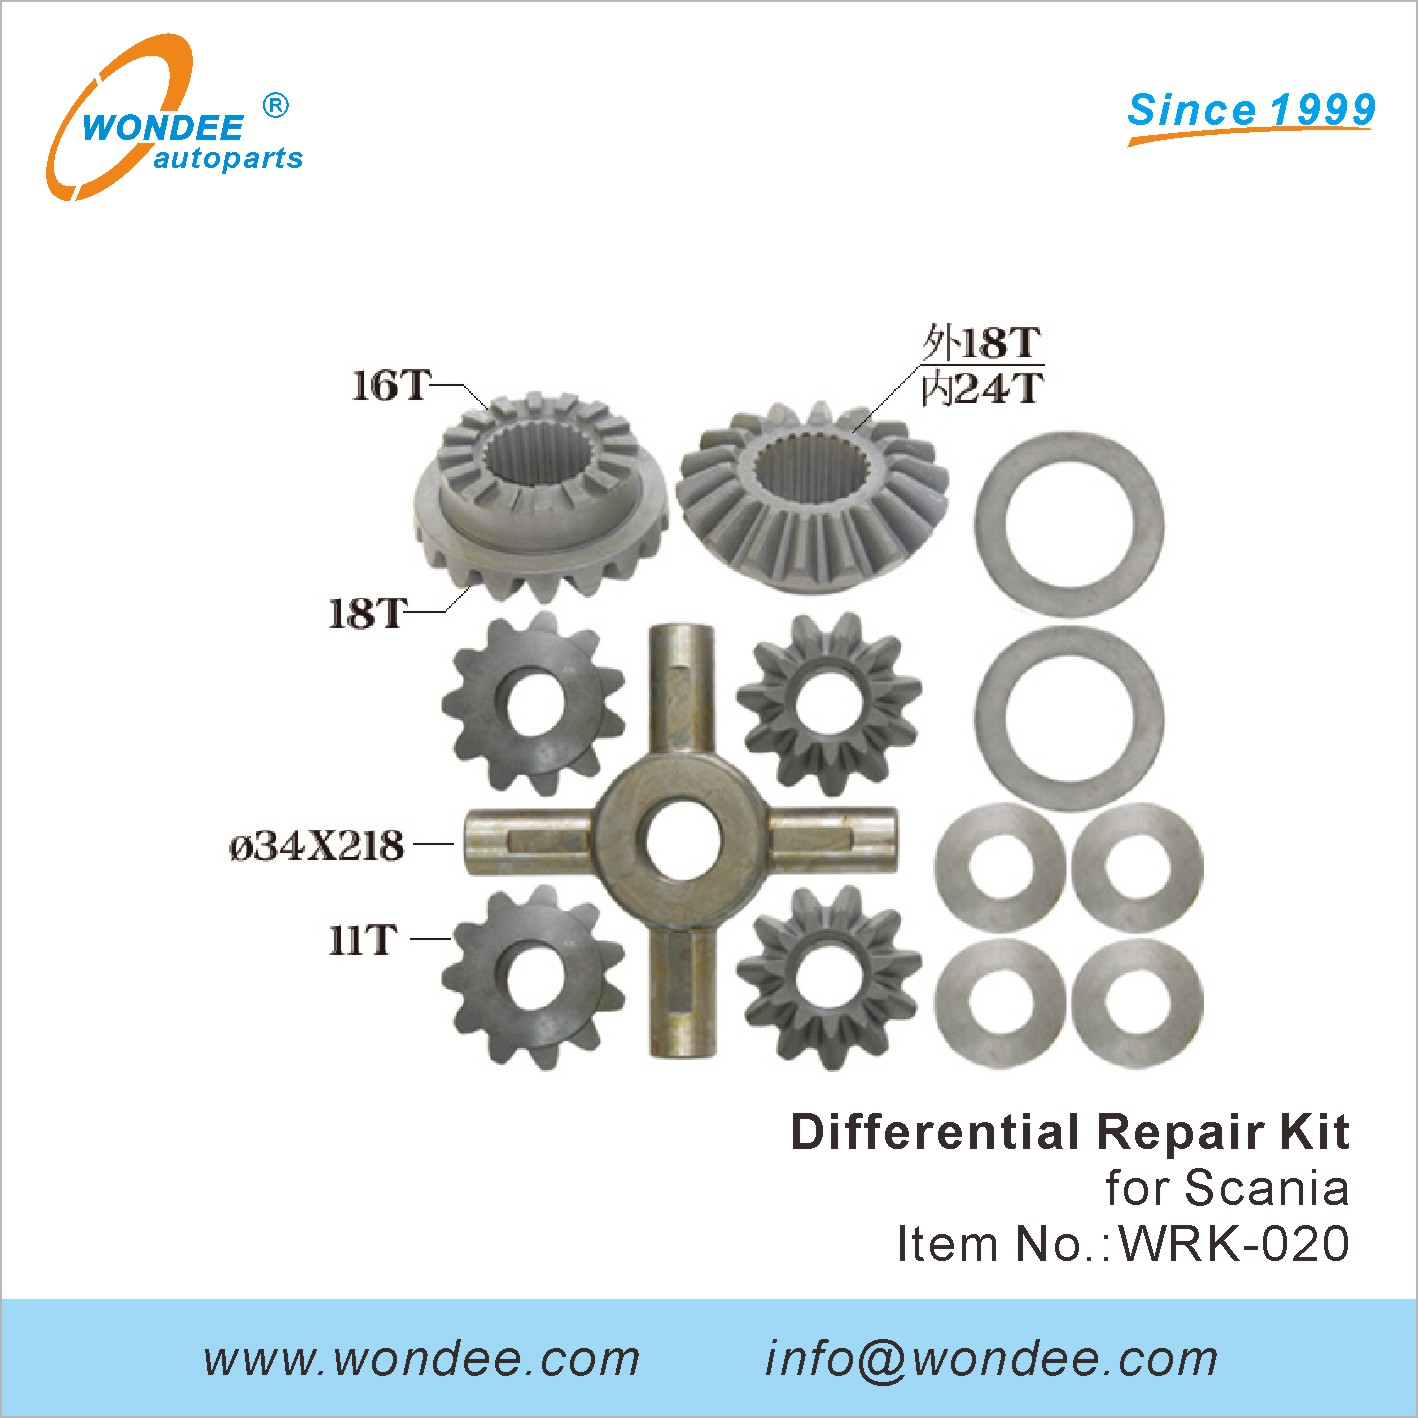 WONDEE differential repair kit (20)